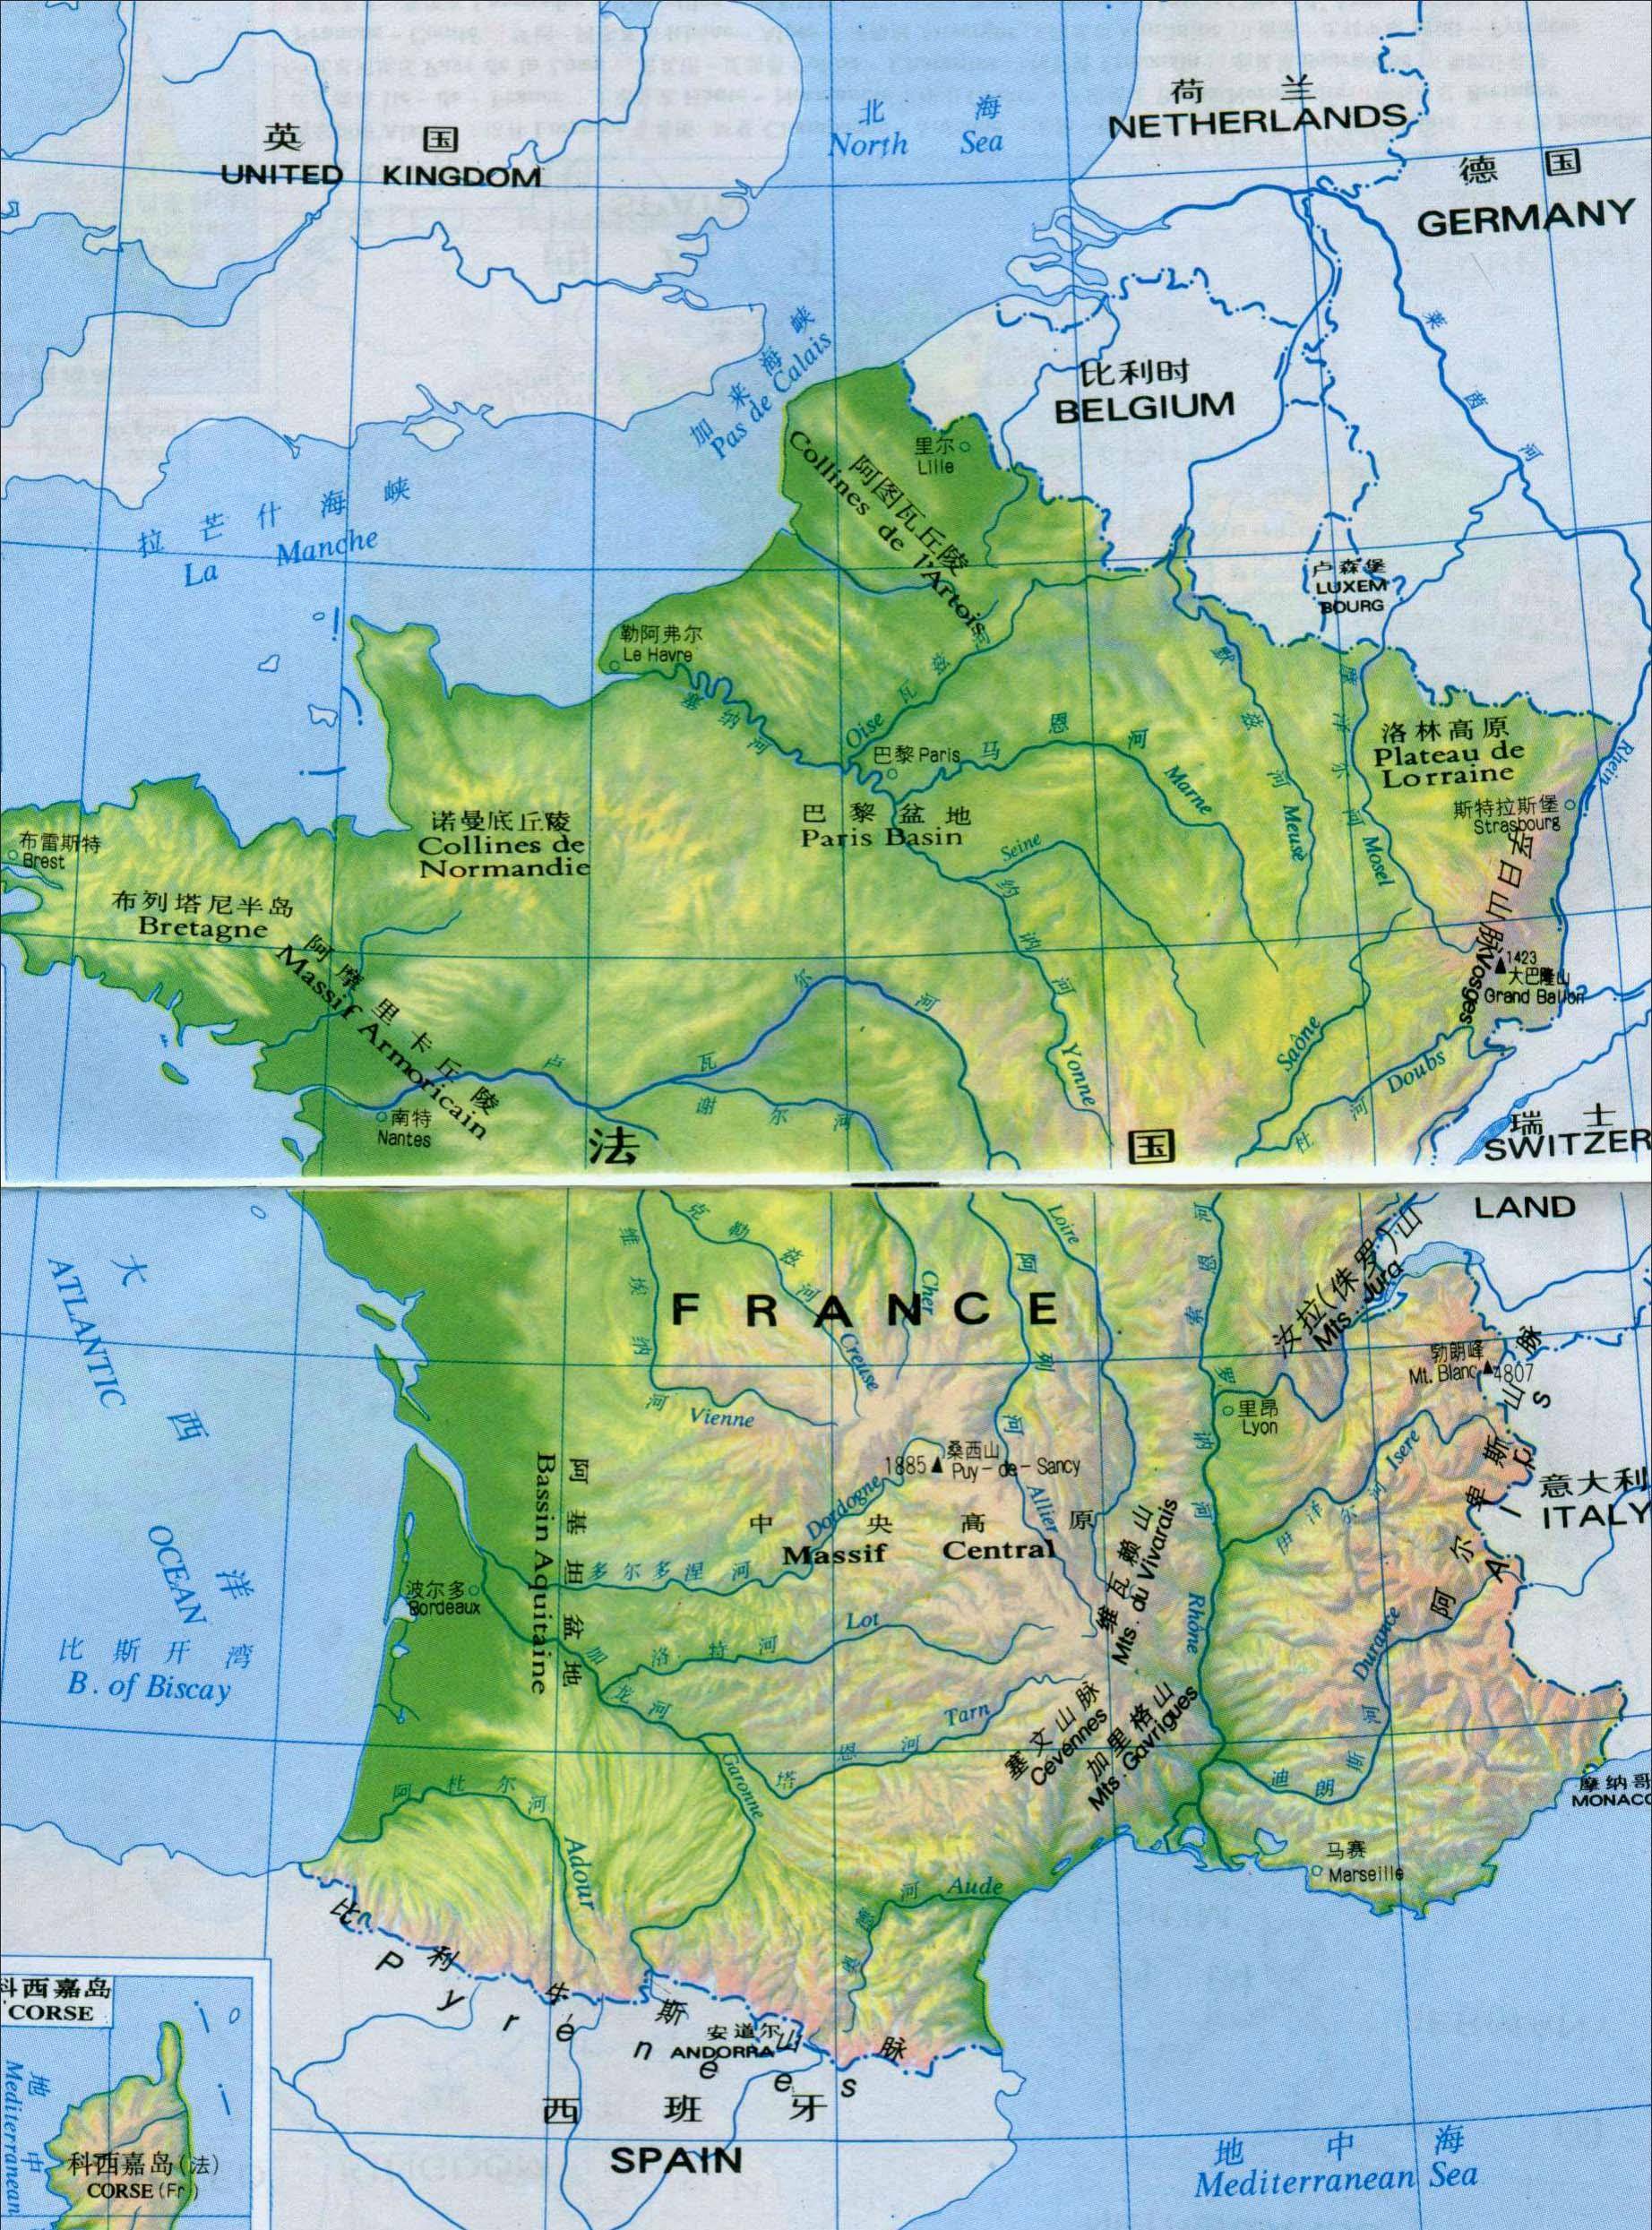 鲜为人知的法国行政区划：拿破仑的故乡科西嘉与法国本土并不相同